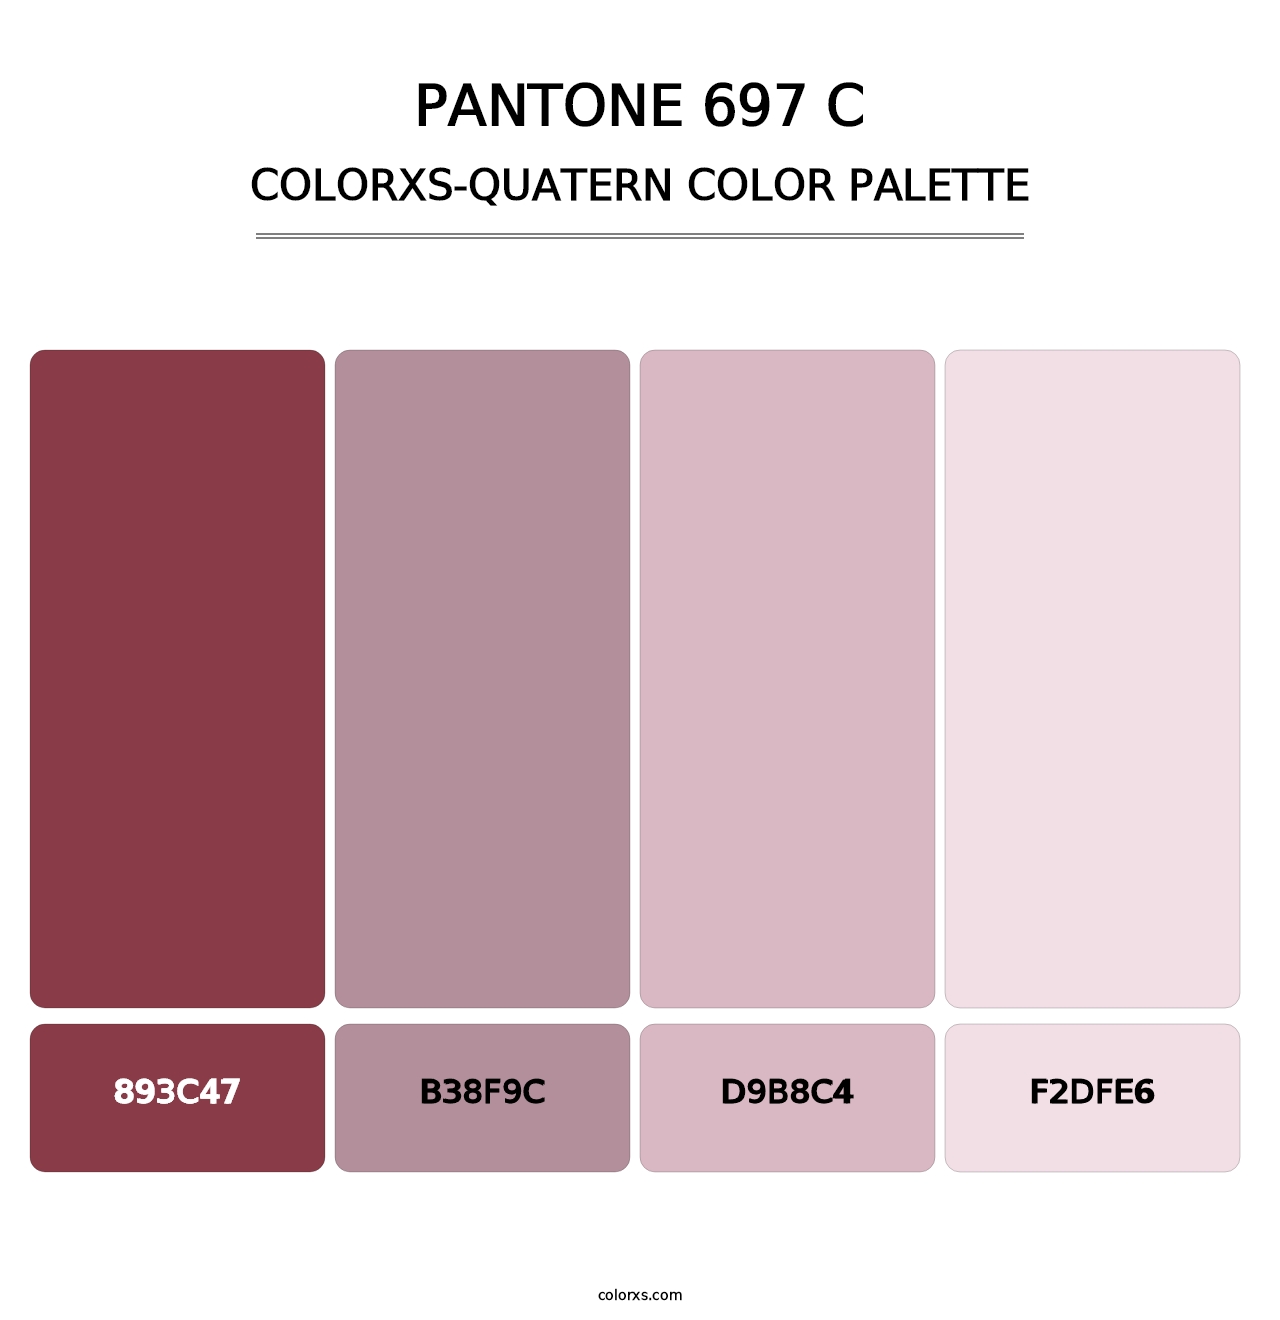 PANTONE 697 C - Colorxs Quatern Palette